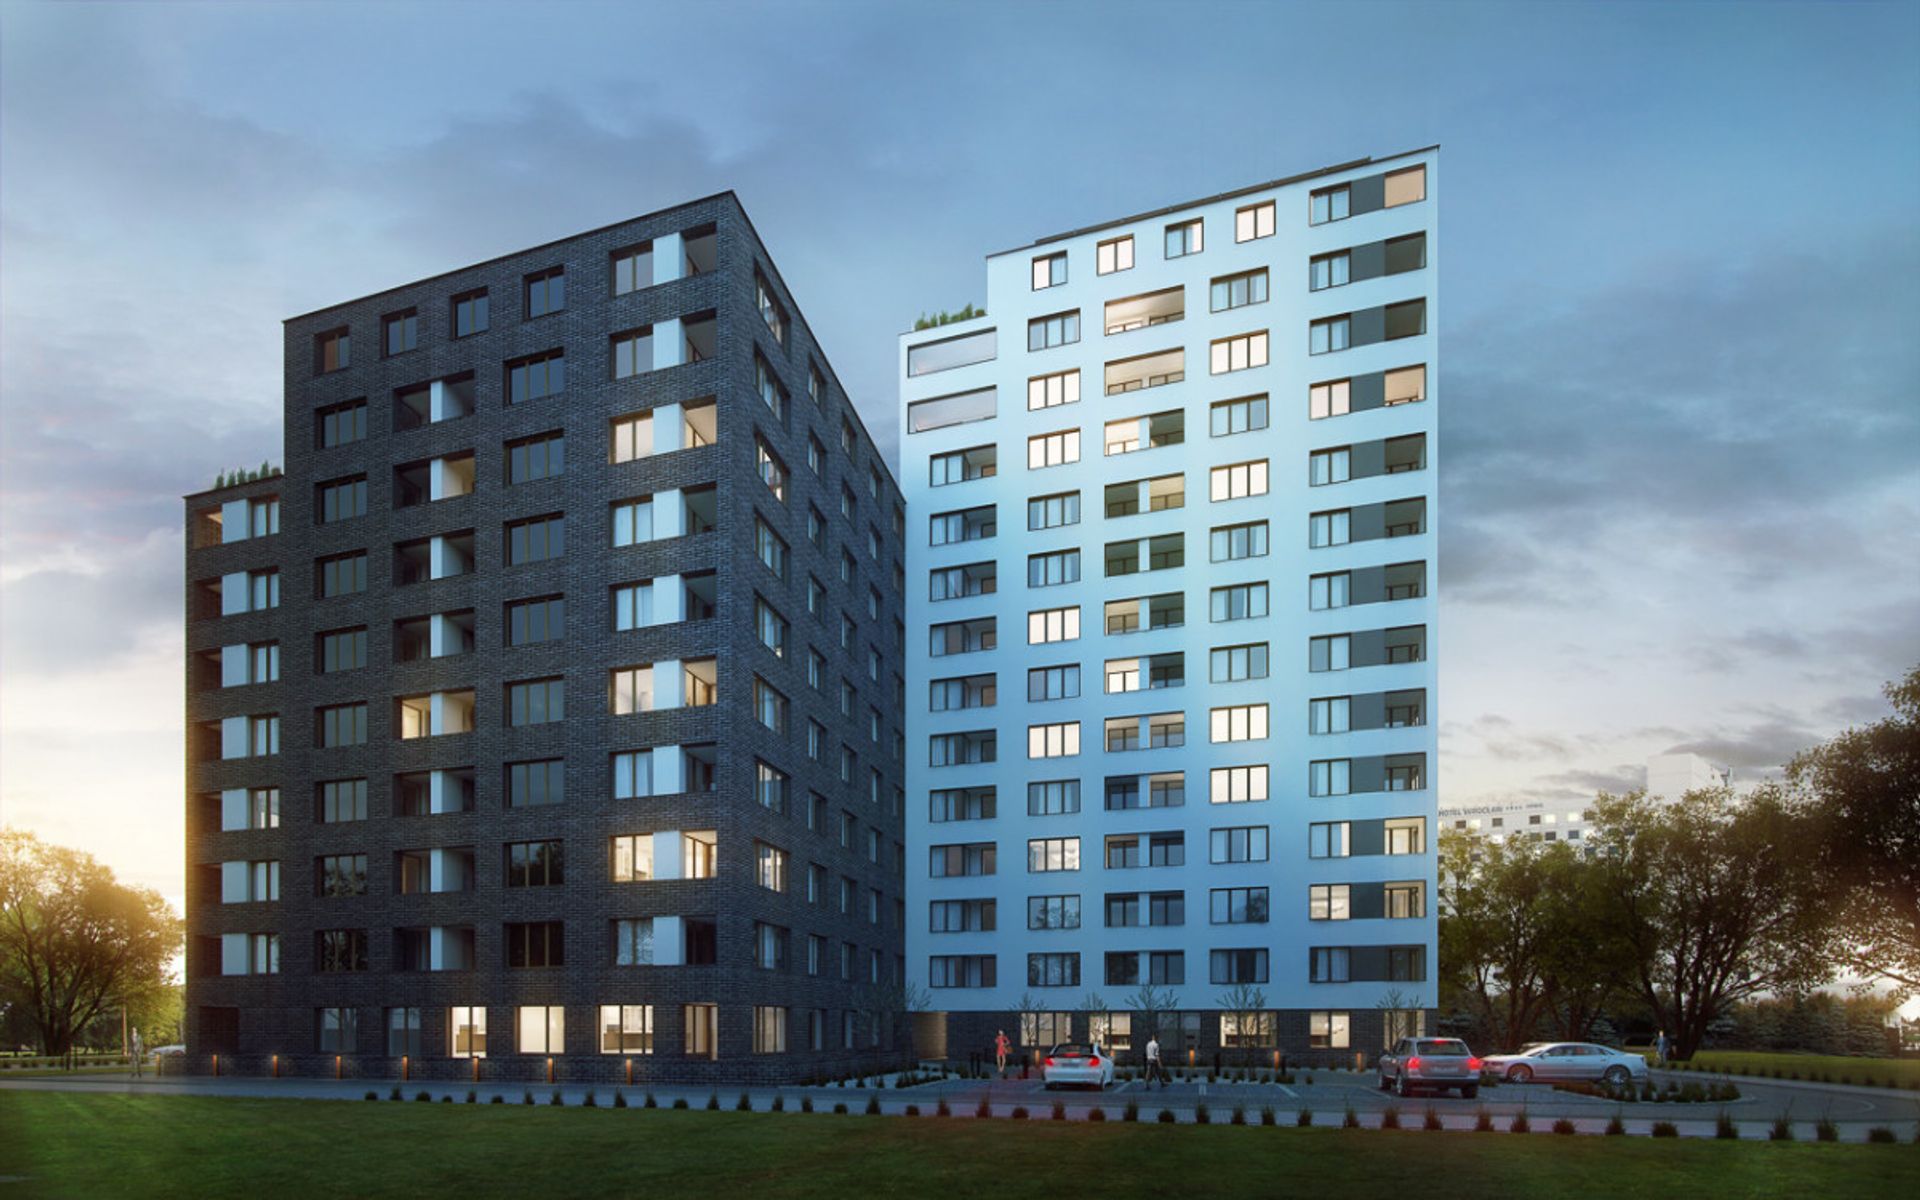 [Wrocław] Awbud wybuduje drugi etap kompleksu mieszkaniowego "Centrum Południowe"